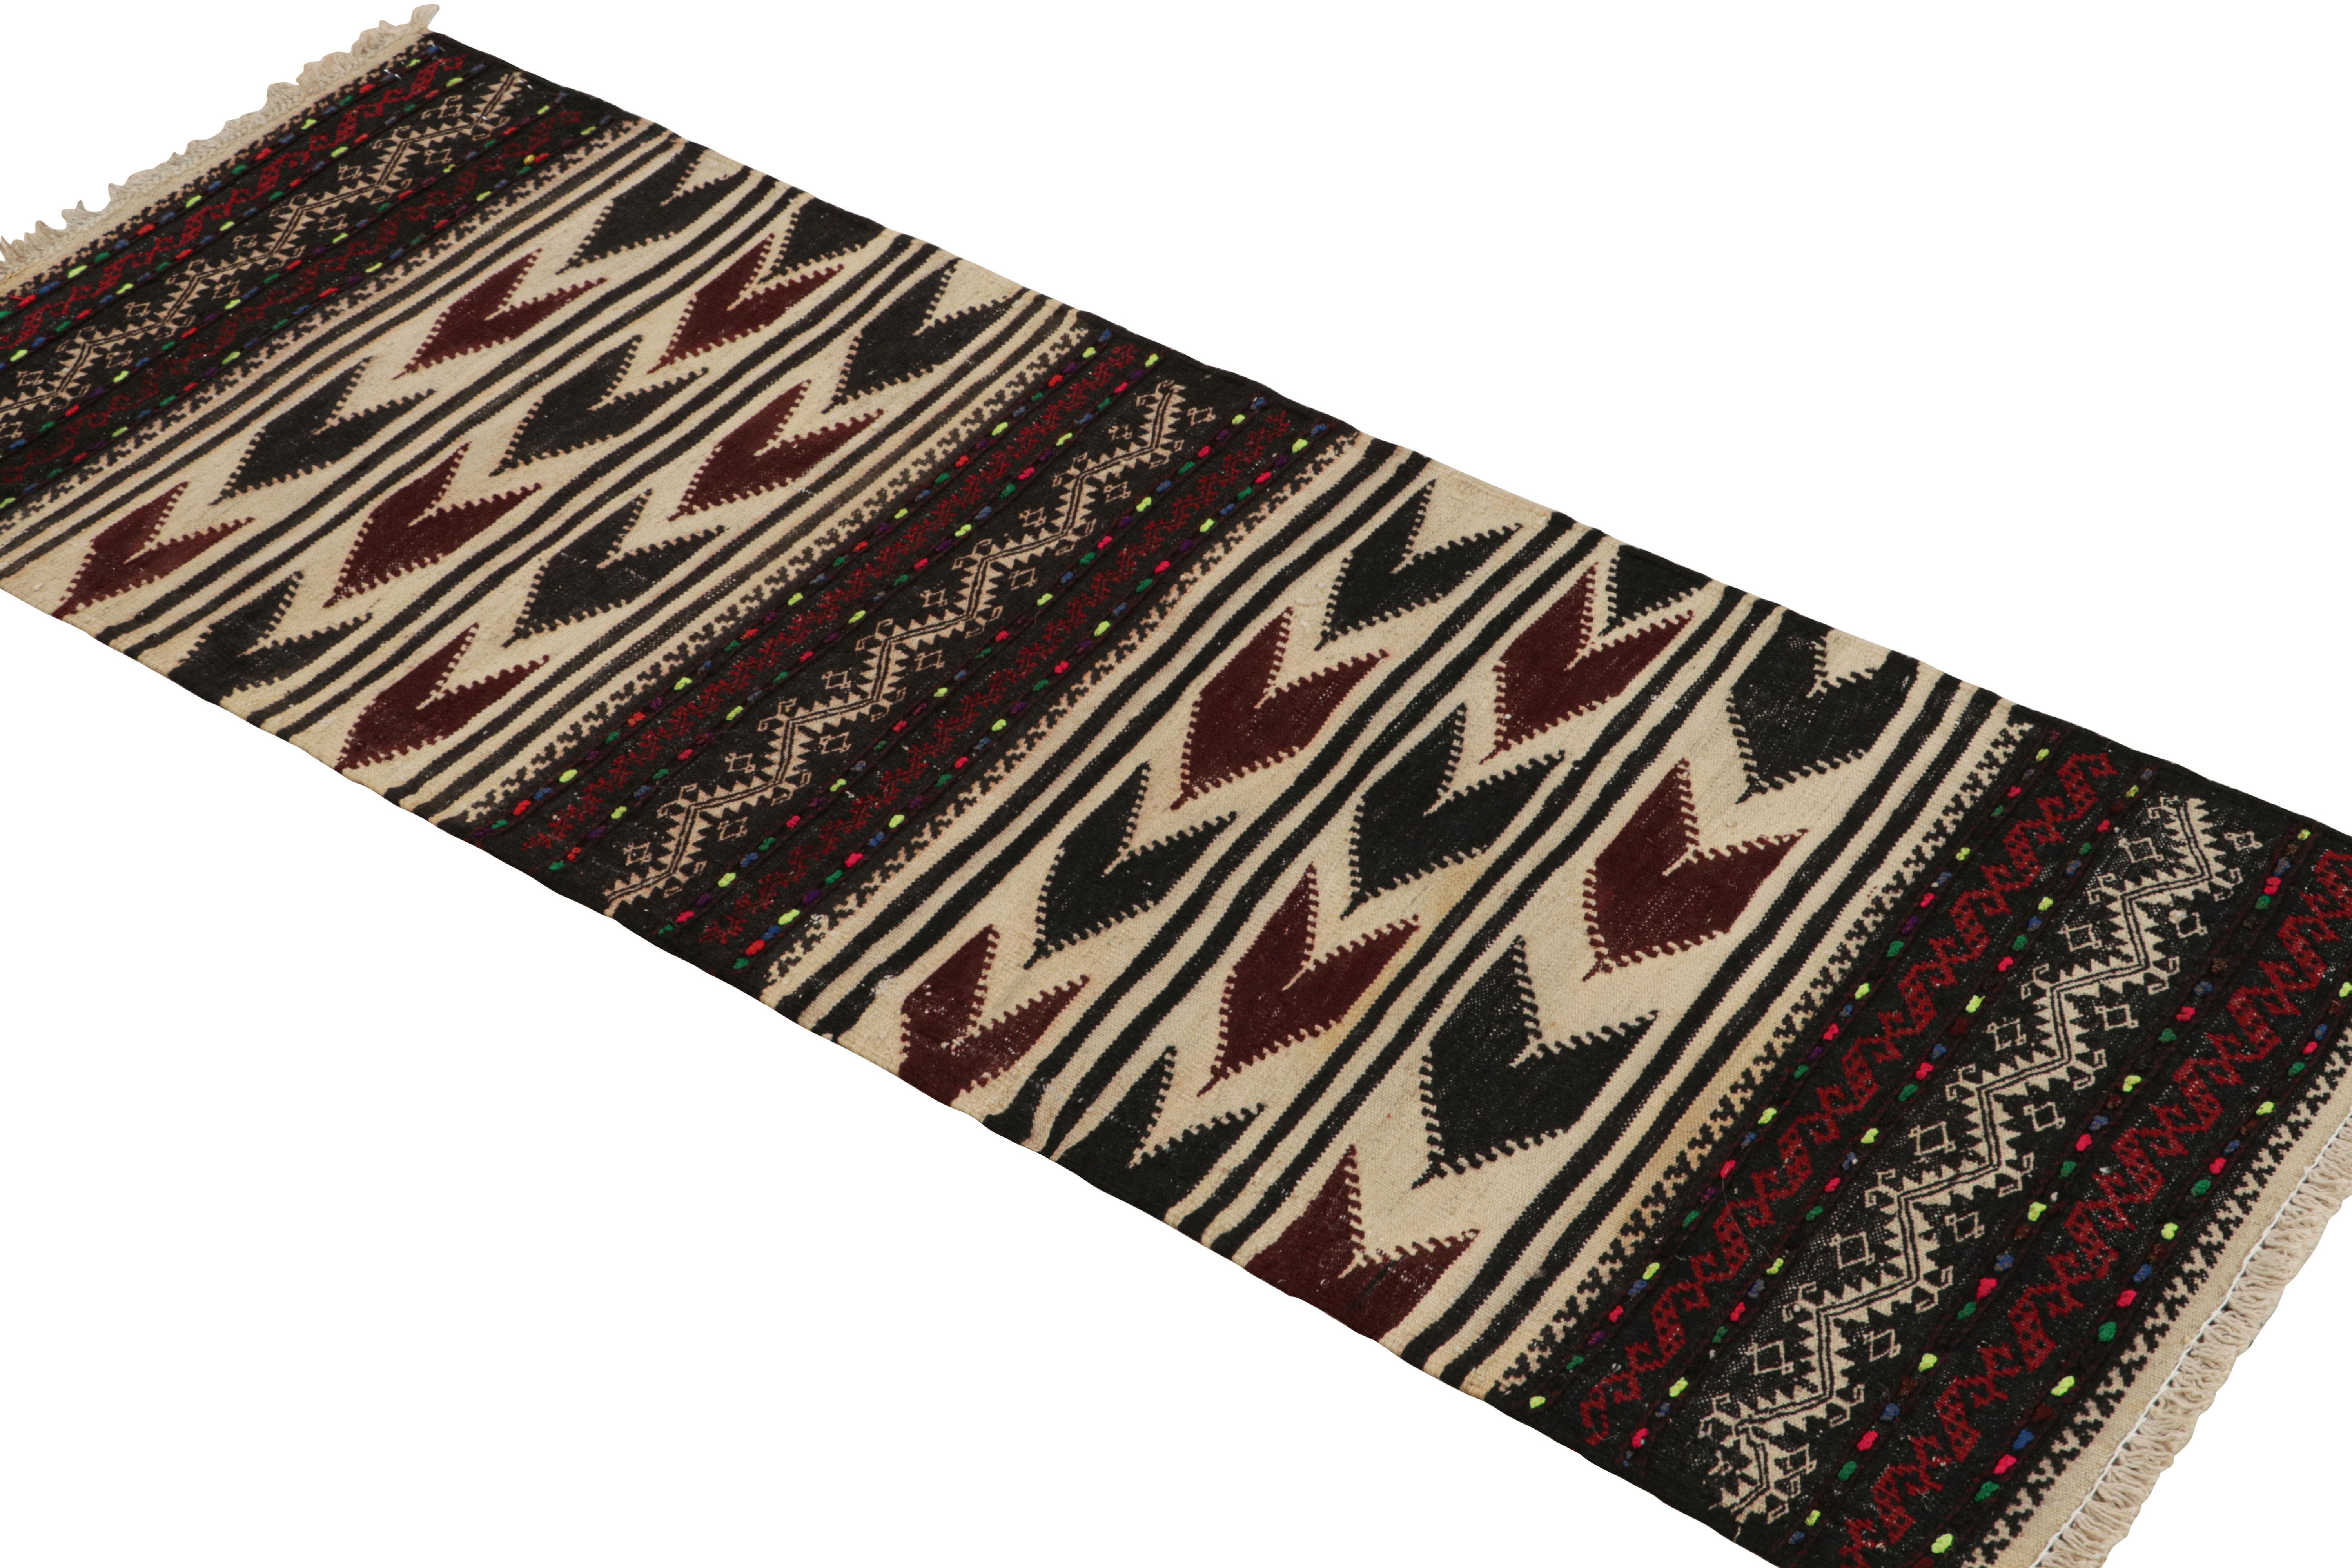 Dieser handgewebte afghanische 2x4-Kilim-Teppich im Vintage-Stil stammt aus der Zeit um 1950-1960 - eine Stammeszusammenstellung unter den Neuzugängen der Rug & Kilim Collection.

Über das Design:

Eine polychrome Farbgebung mit satten und